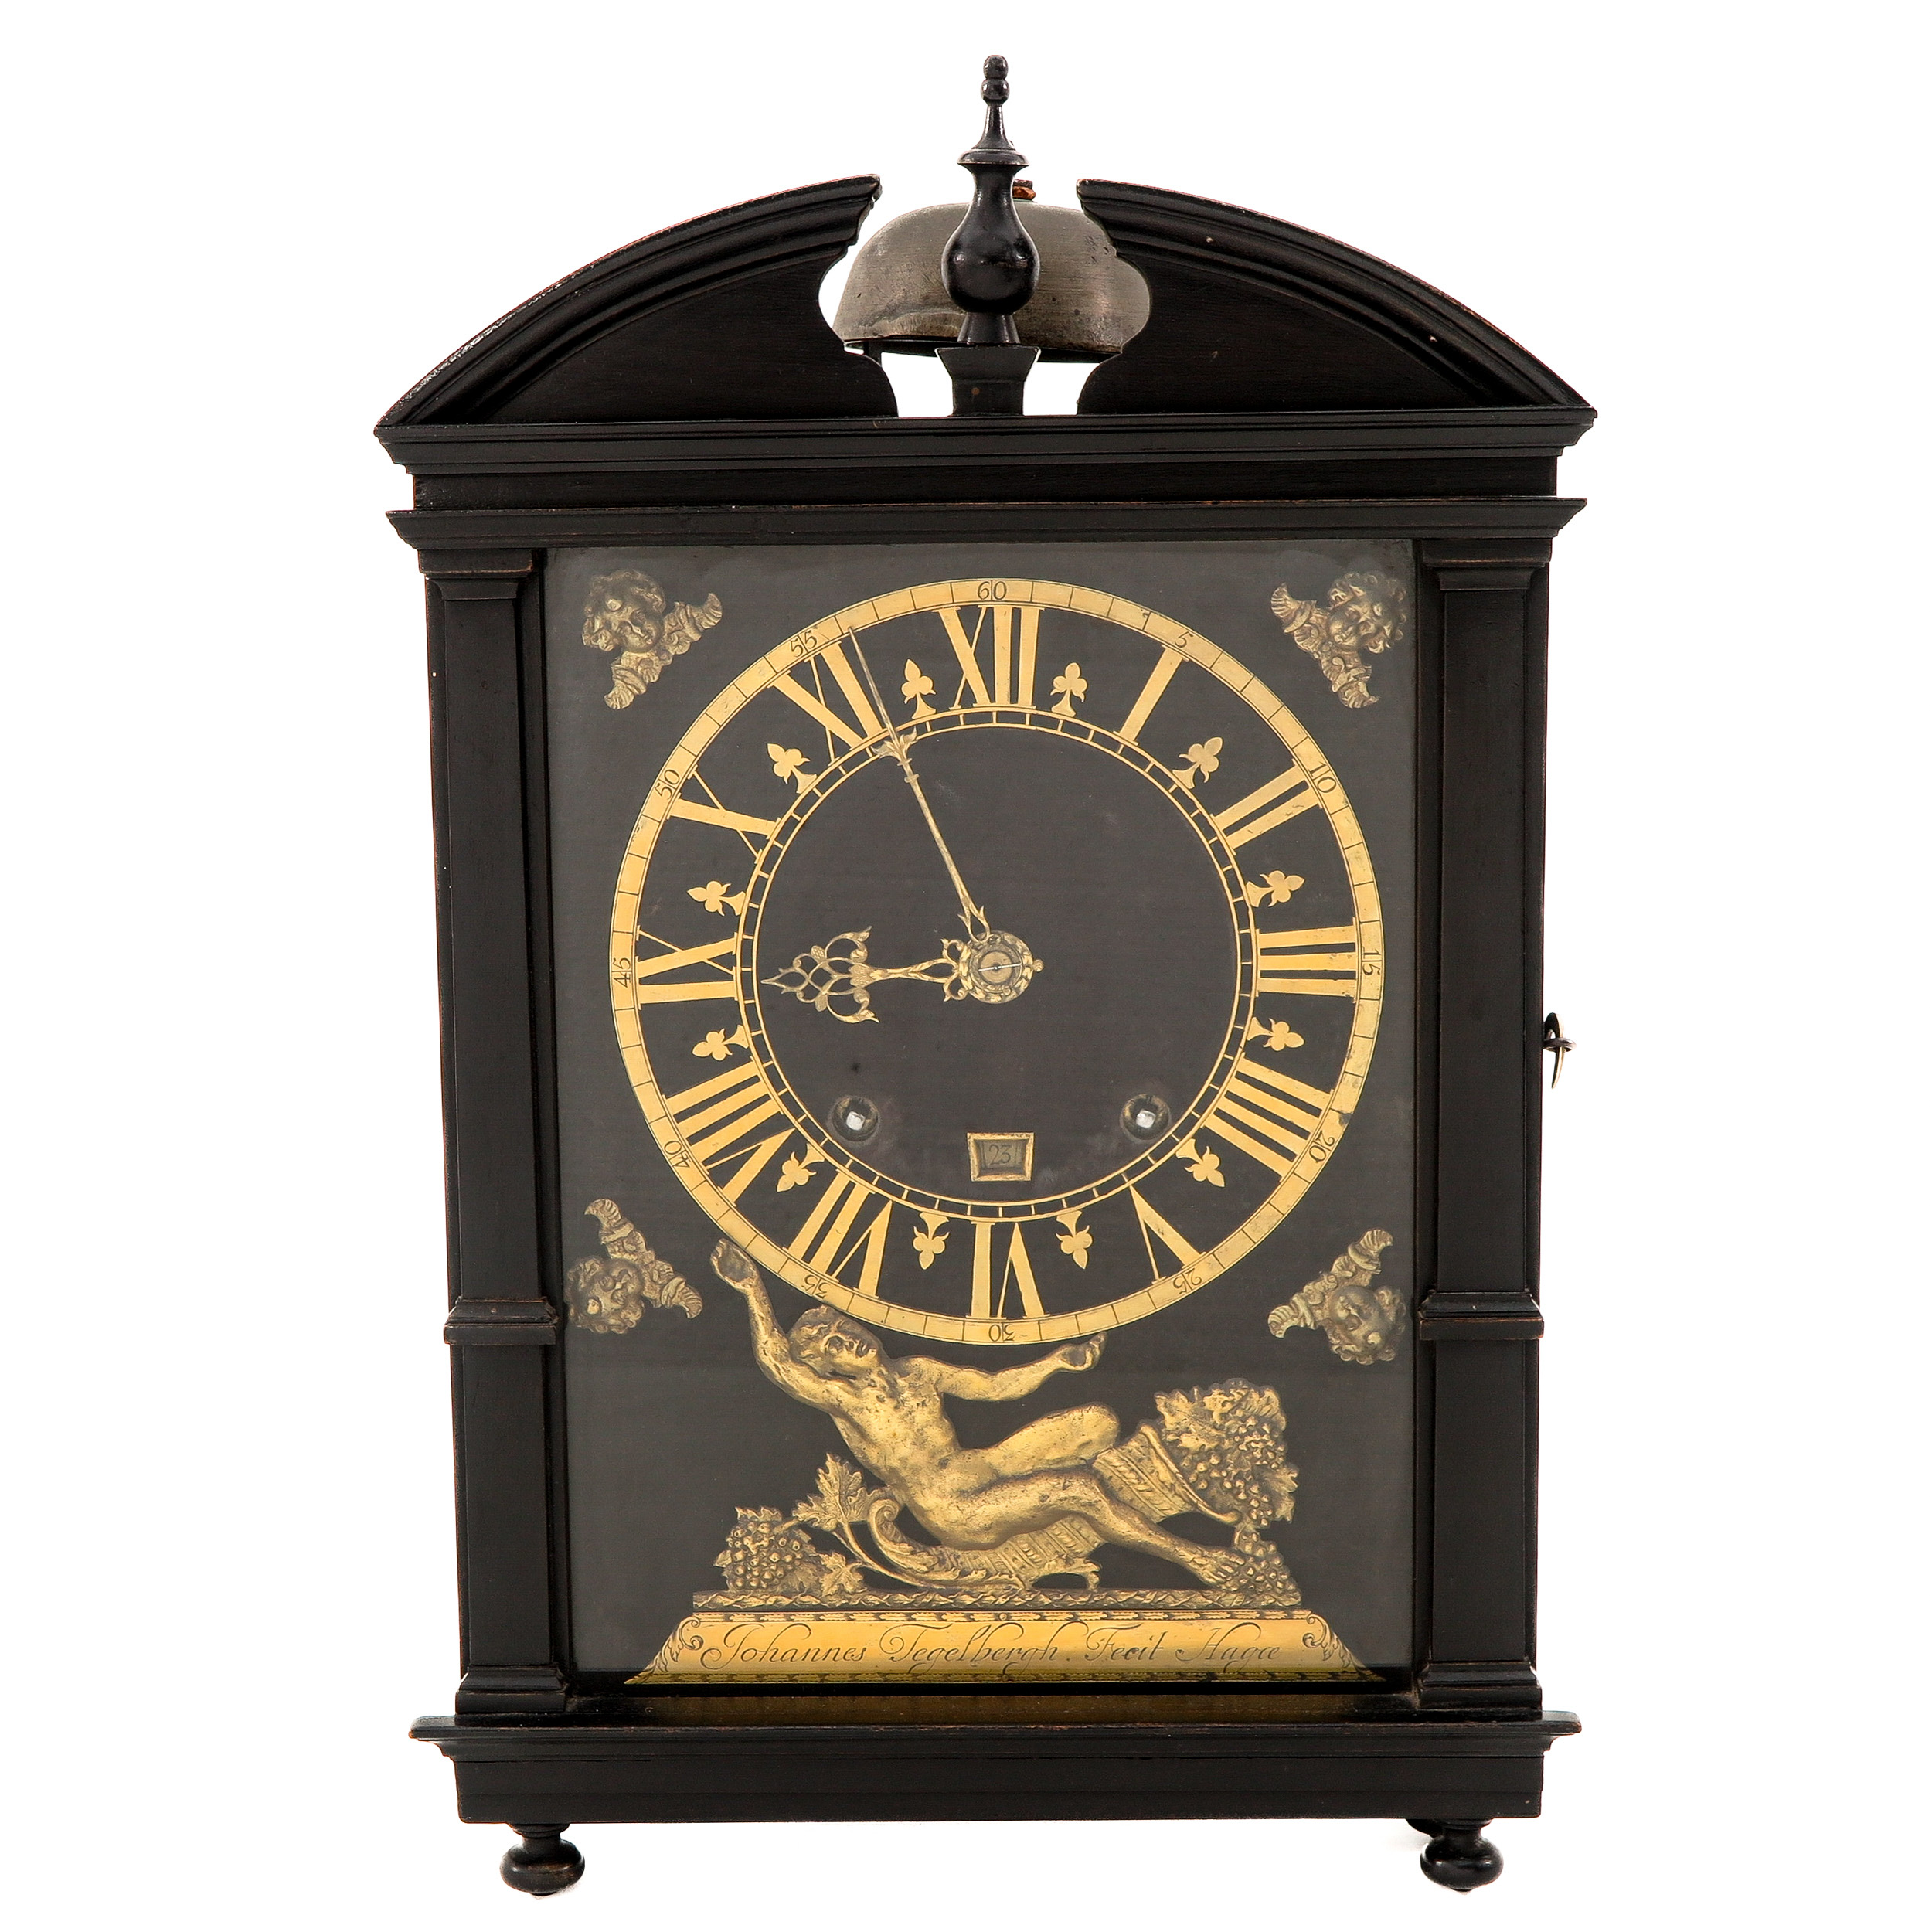 A Hague Clock